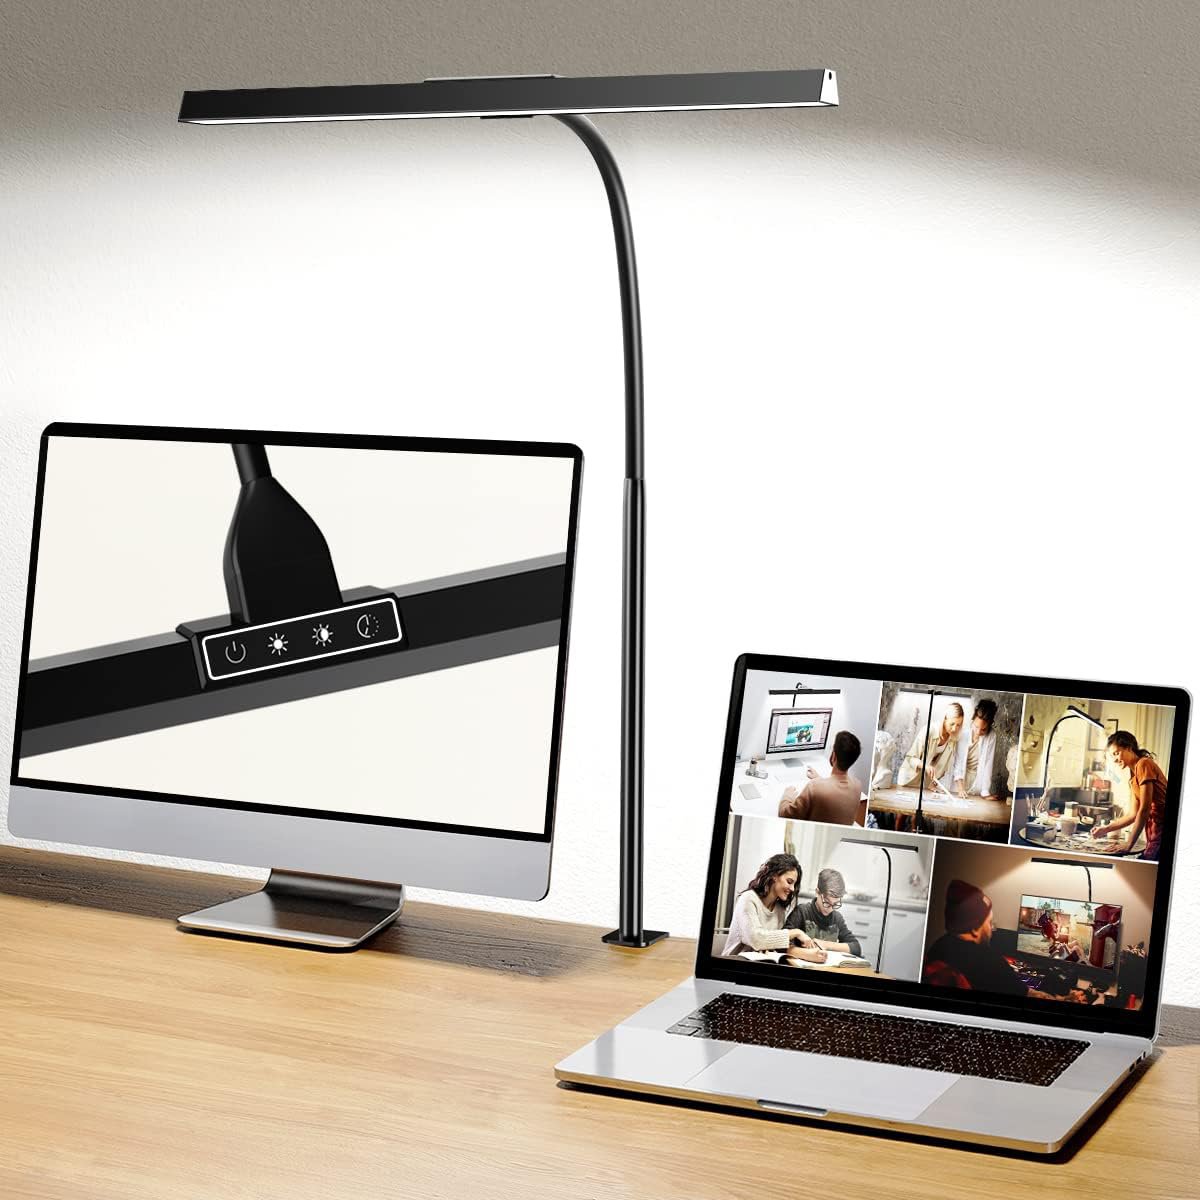 Eficiencia energética y diseño elegante al Hapfish Lampara LED escritorio en oferta al 19% a Amazon